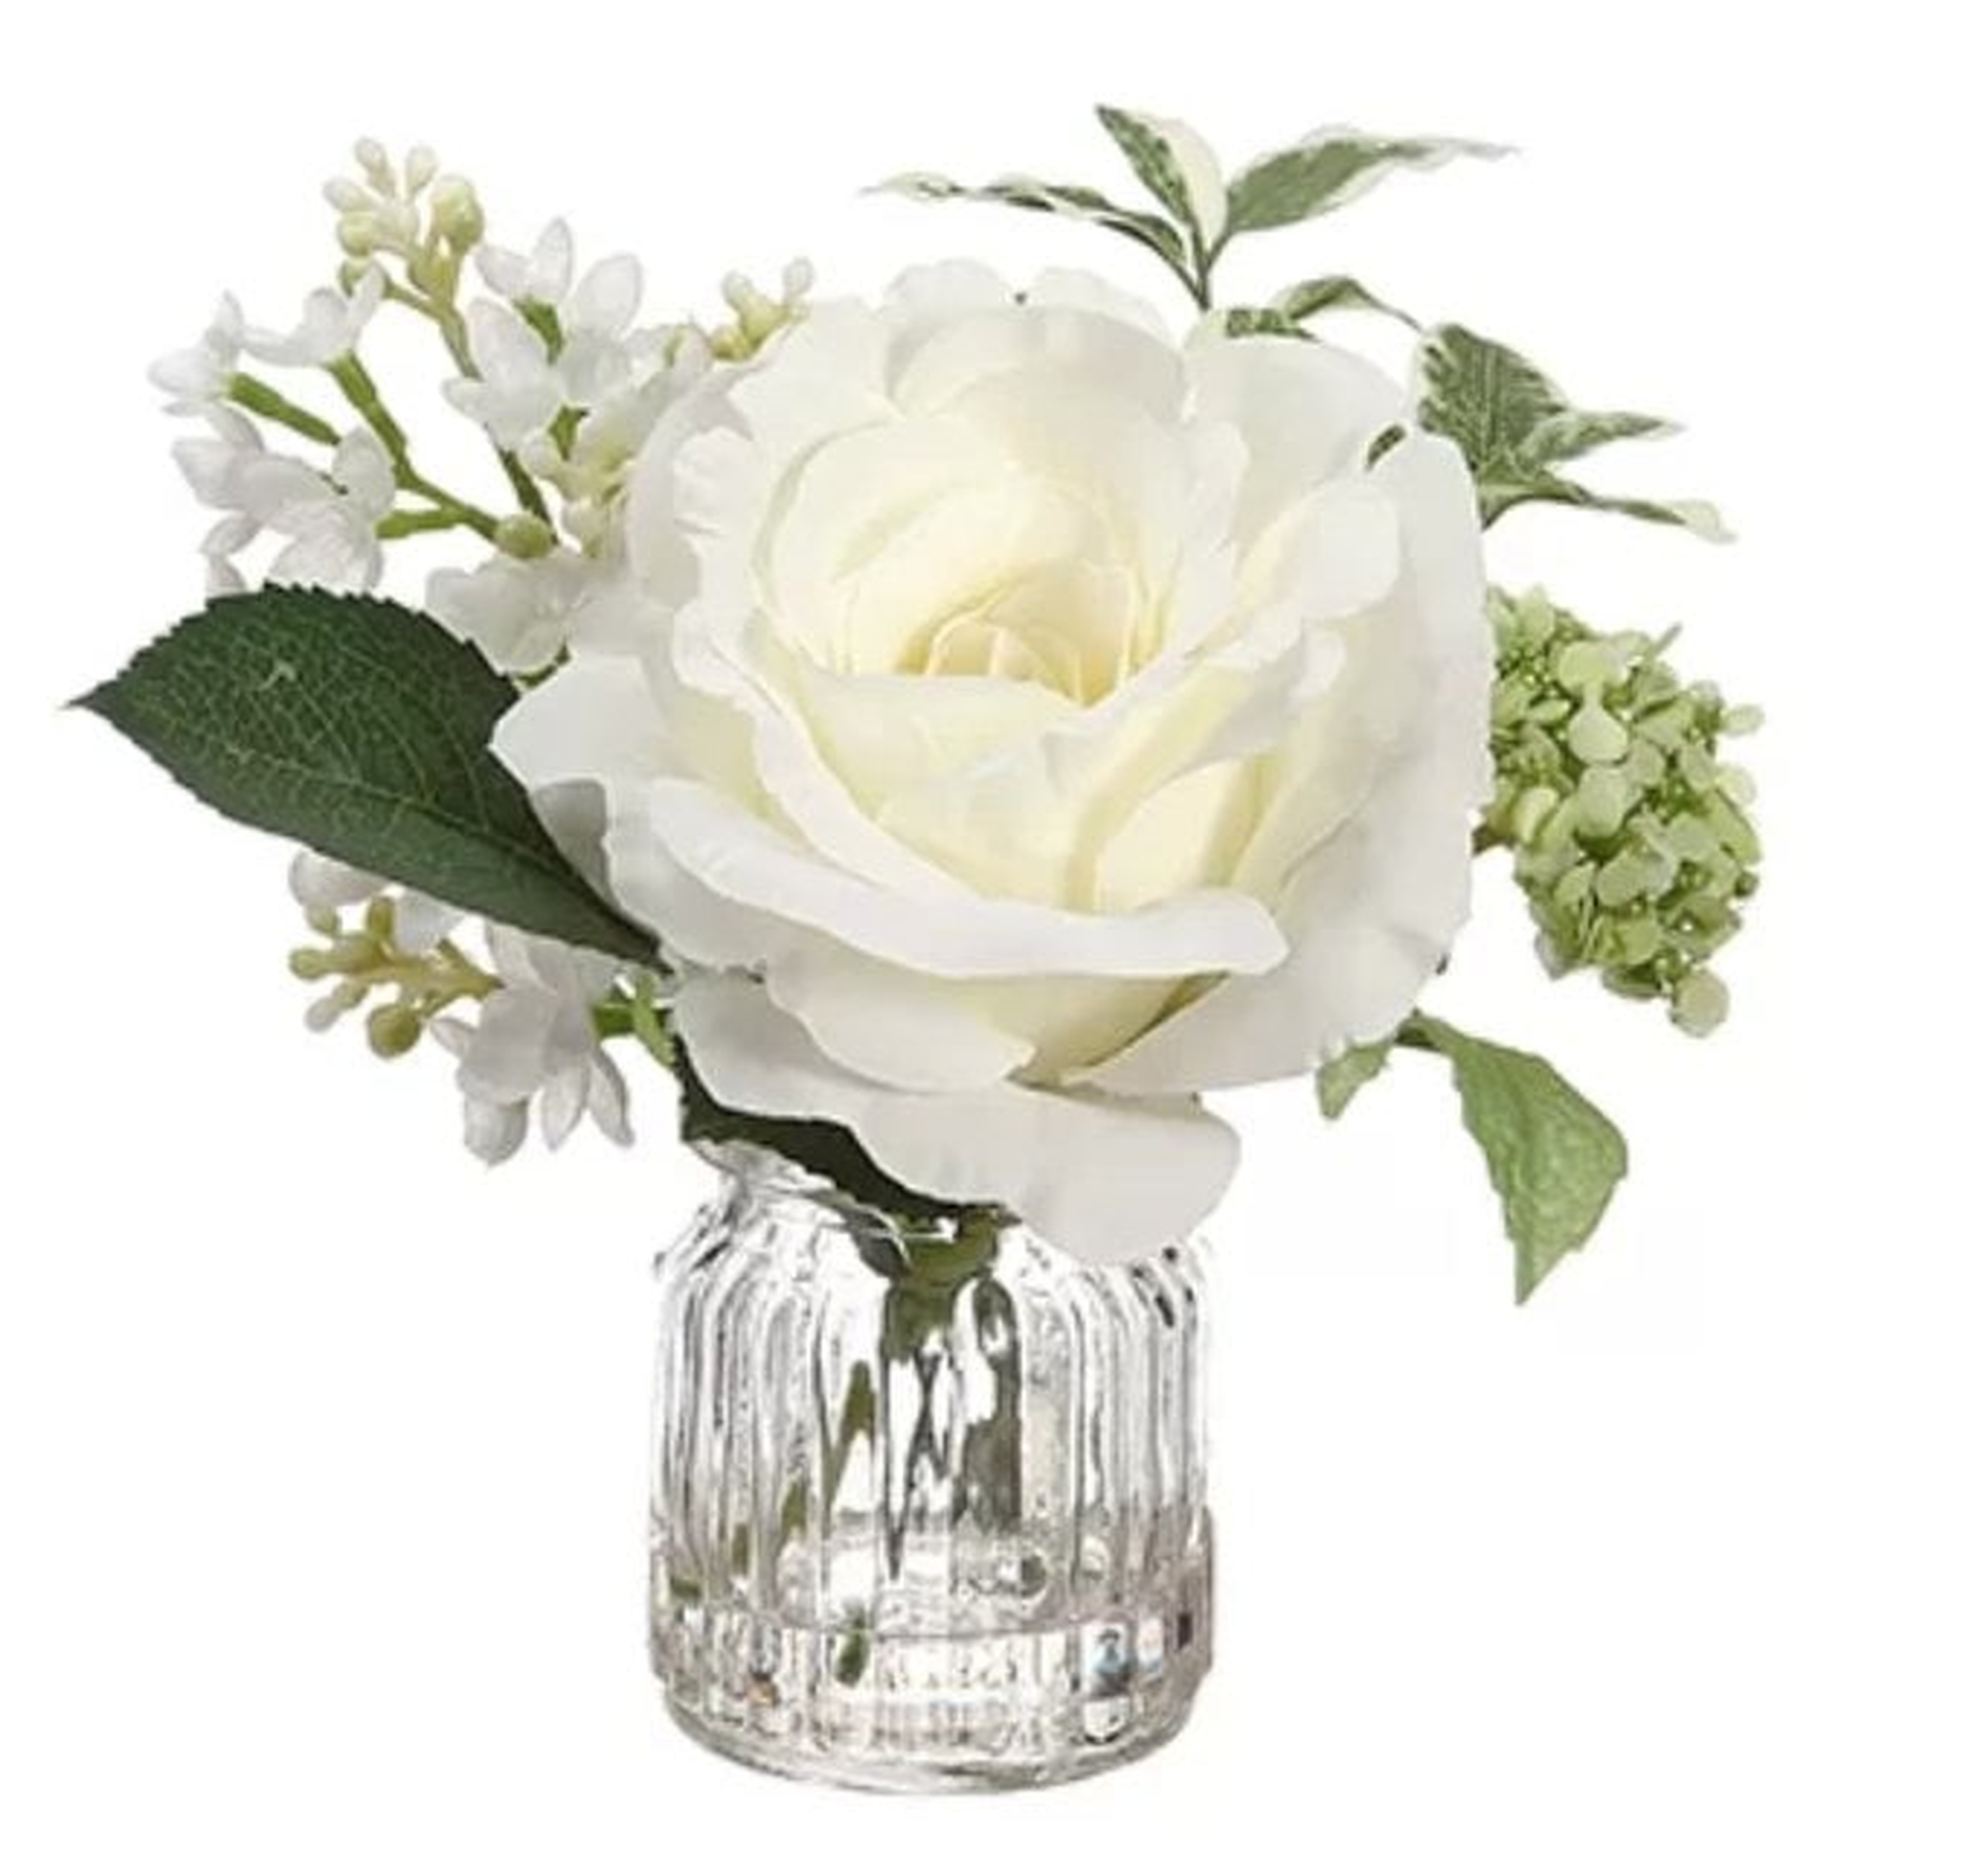 Rose and Lilac Floral Arrangement in Vase - Back in stock December 2018 - Wayfair